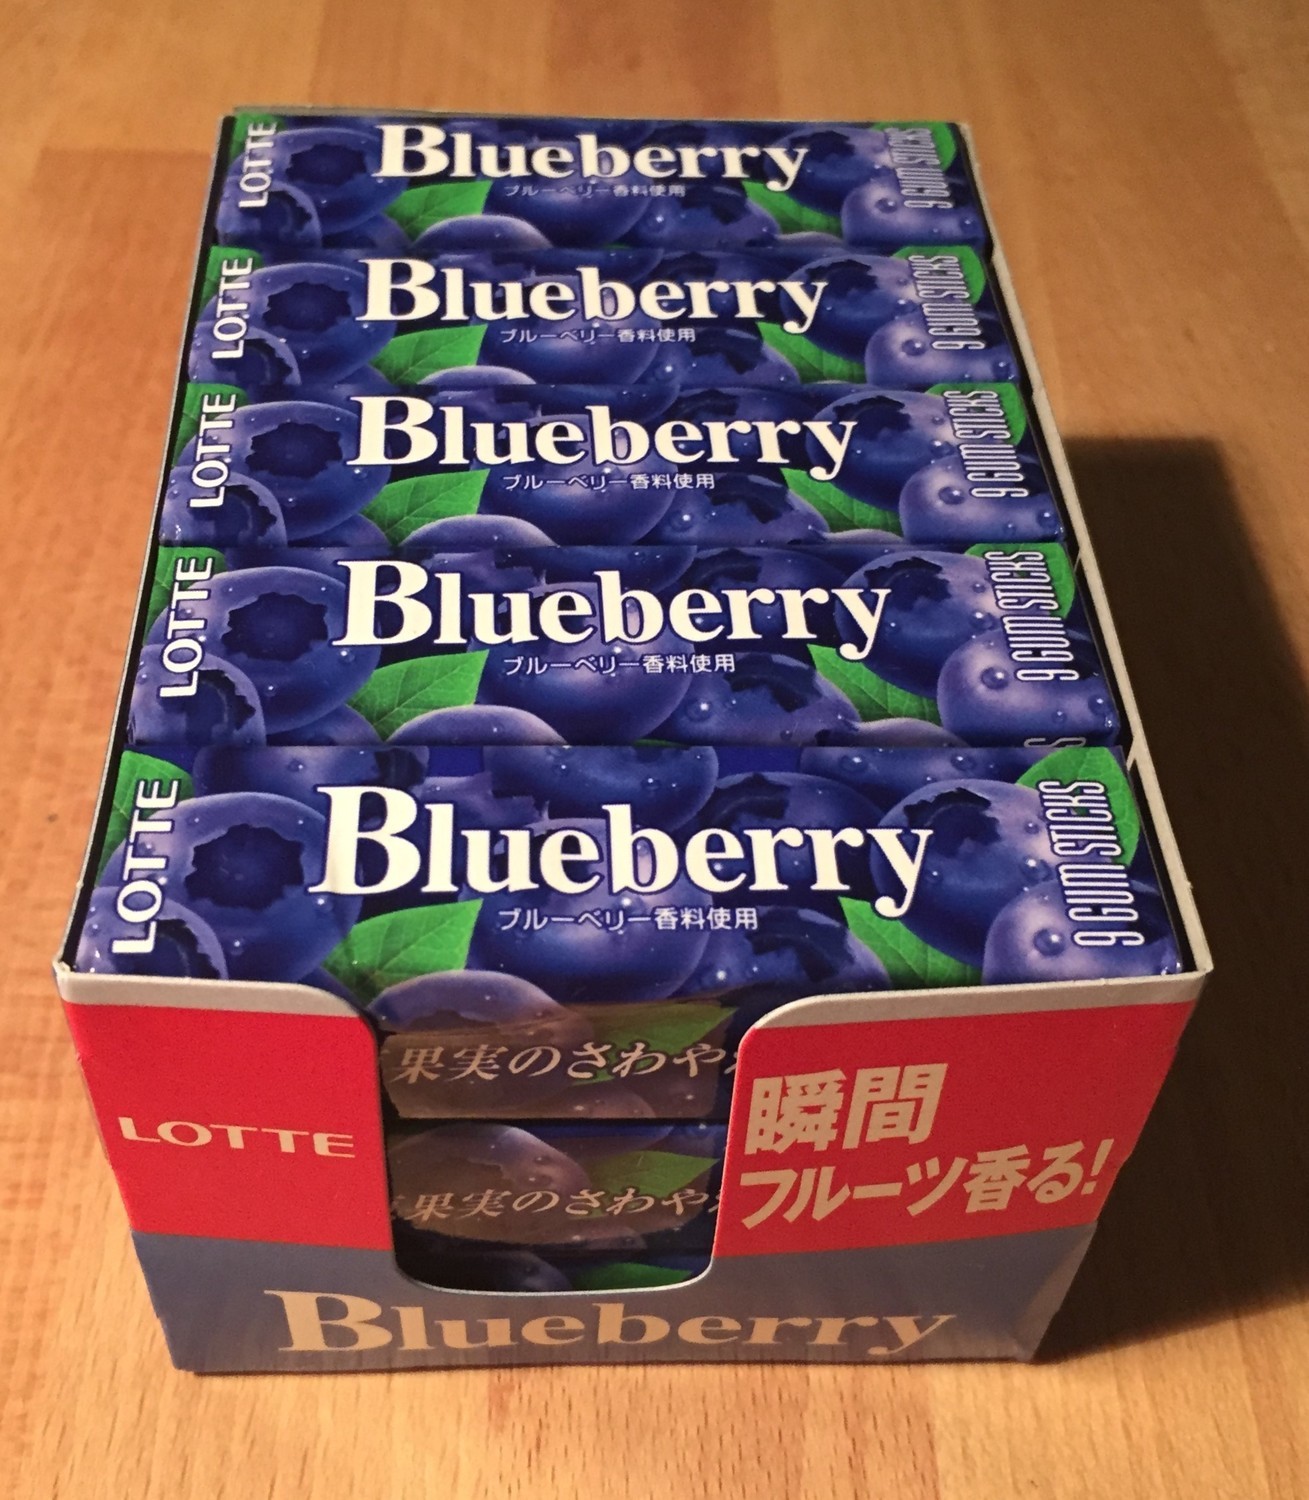 Lotte, Chewing Gum, "Blueberry" 9 gum sticks x 15